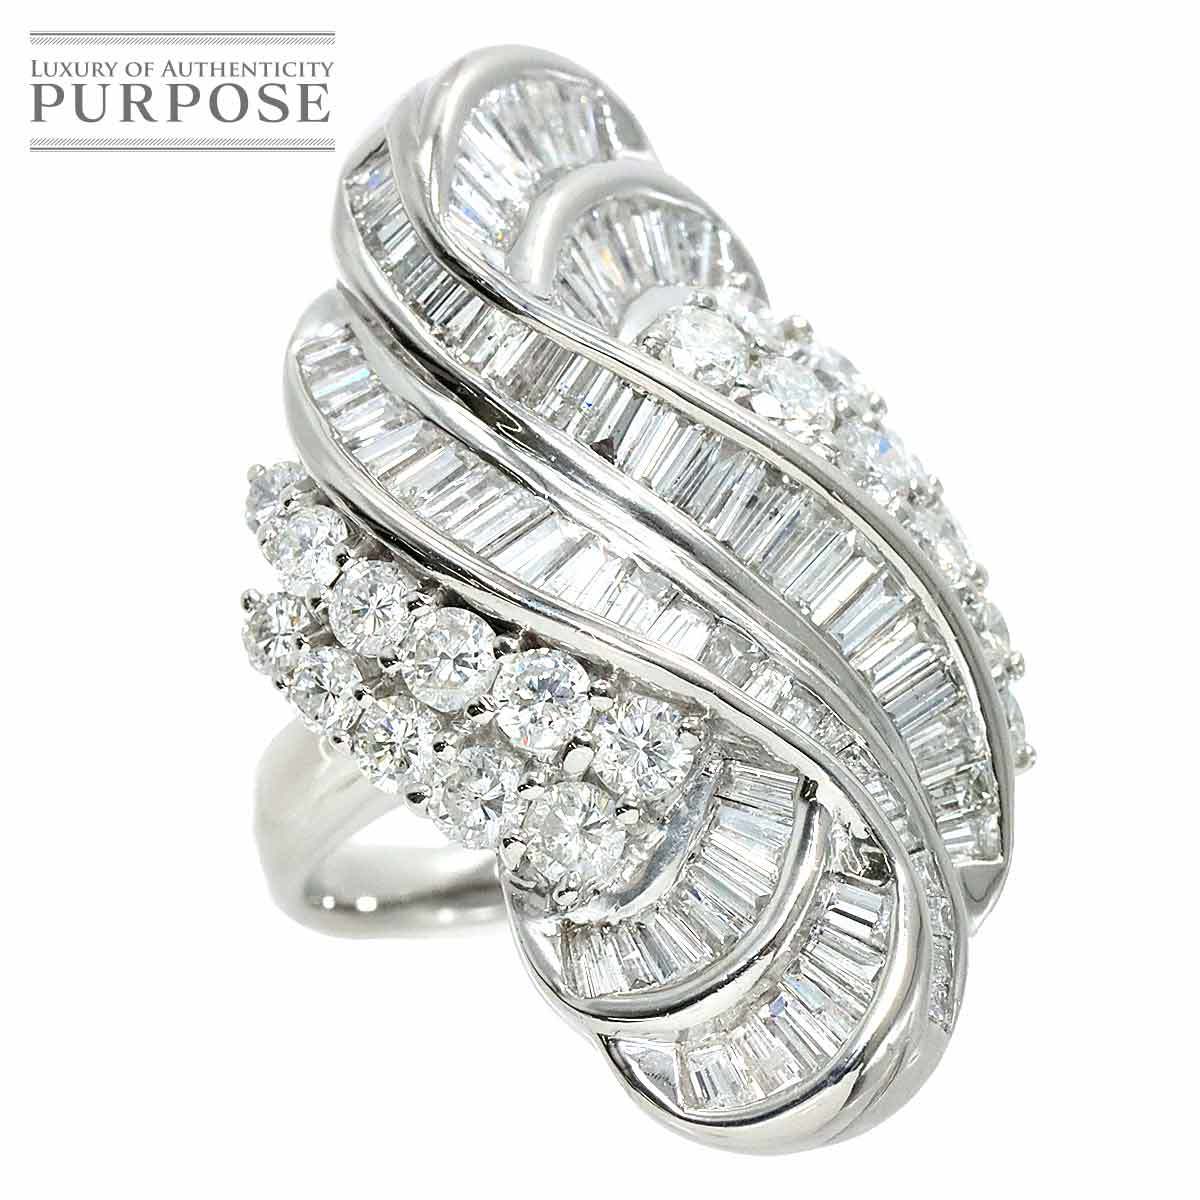 リング 15号 ダイヤ 5.00ct Pt プラチナ 指輪 Diamond Ring 90191872